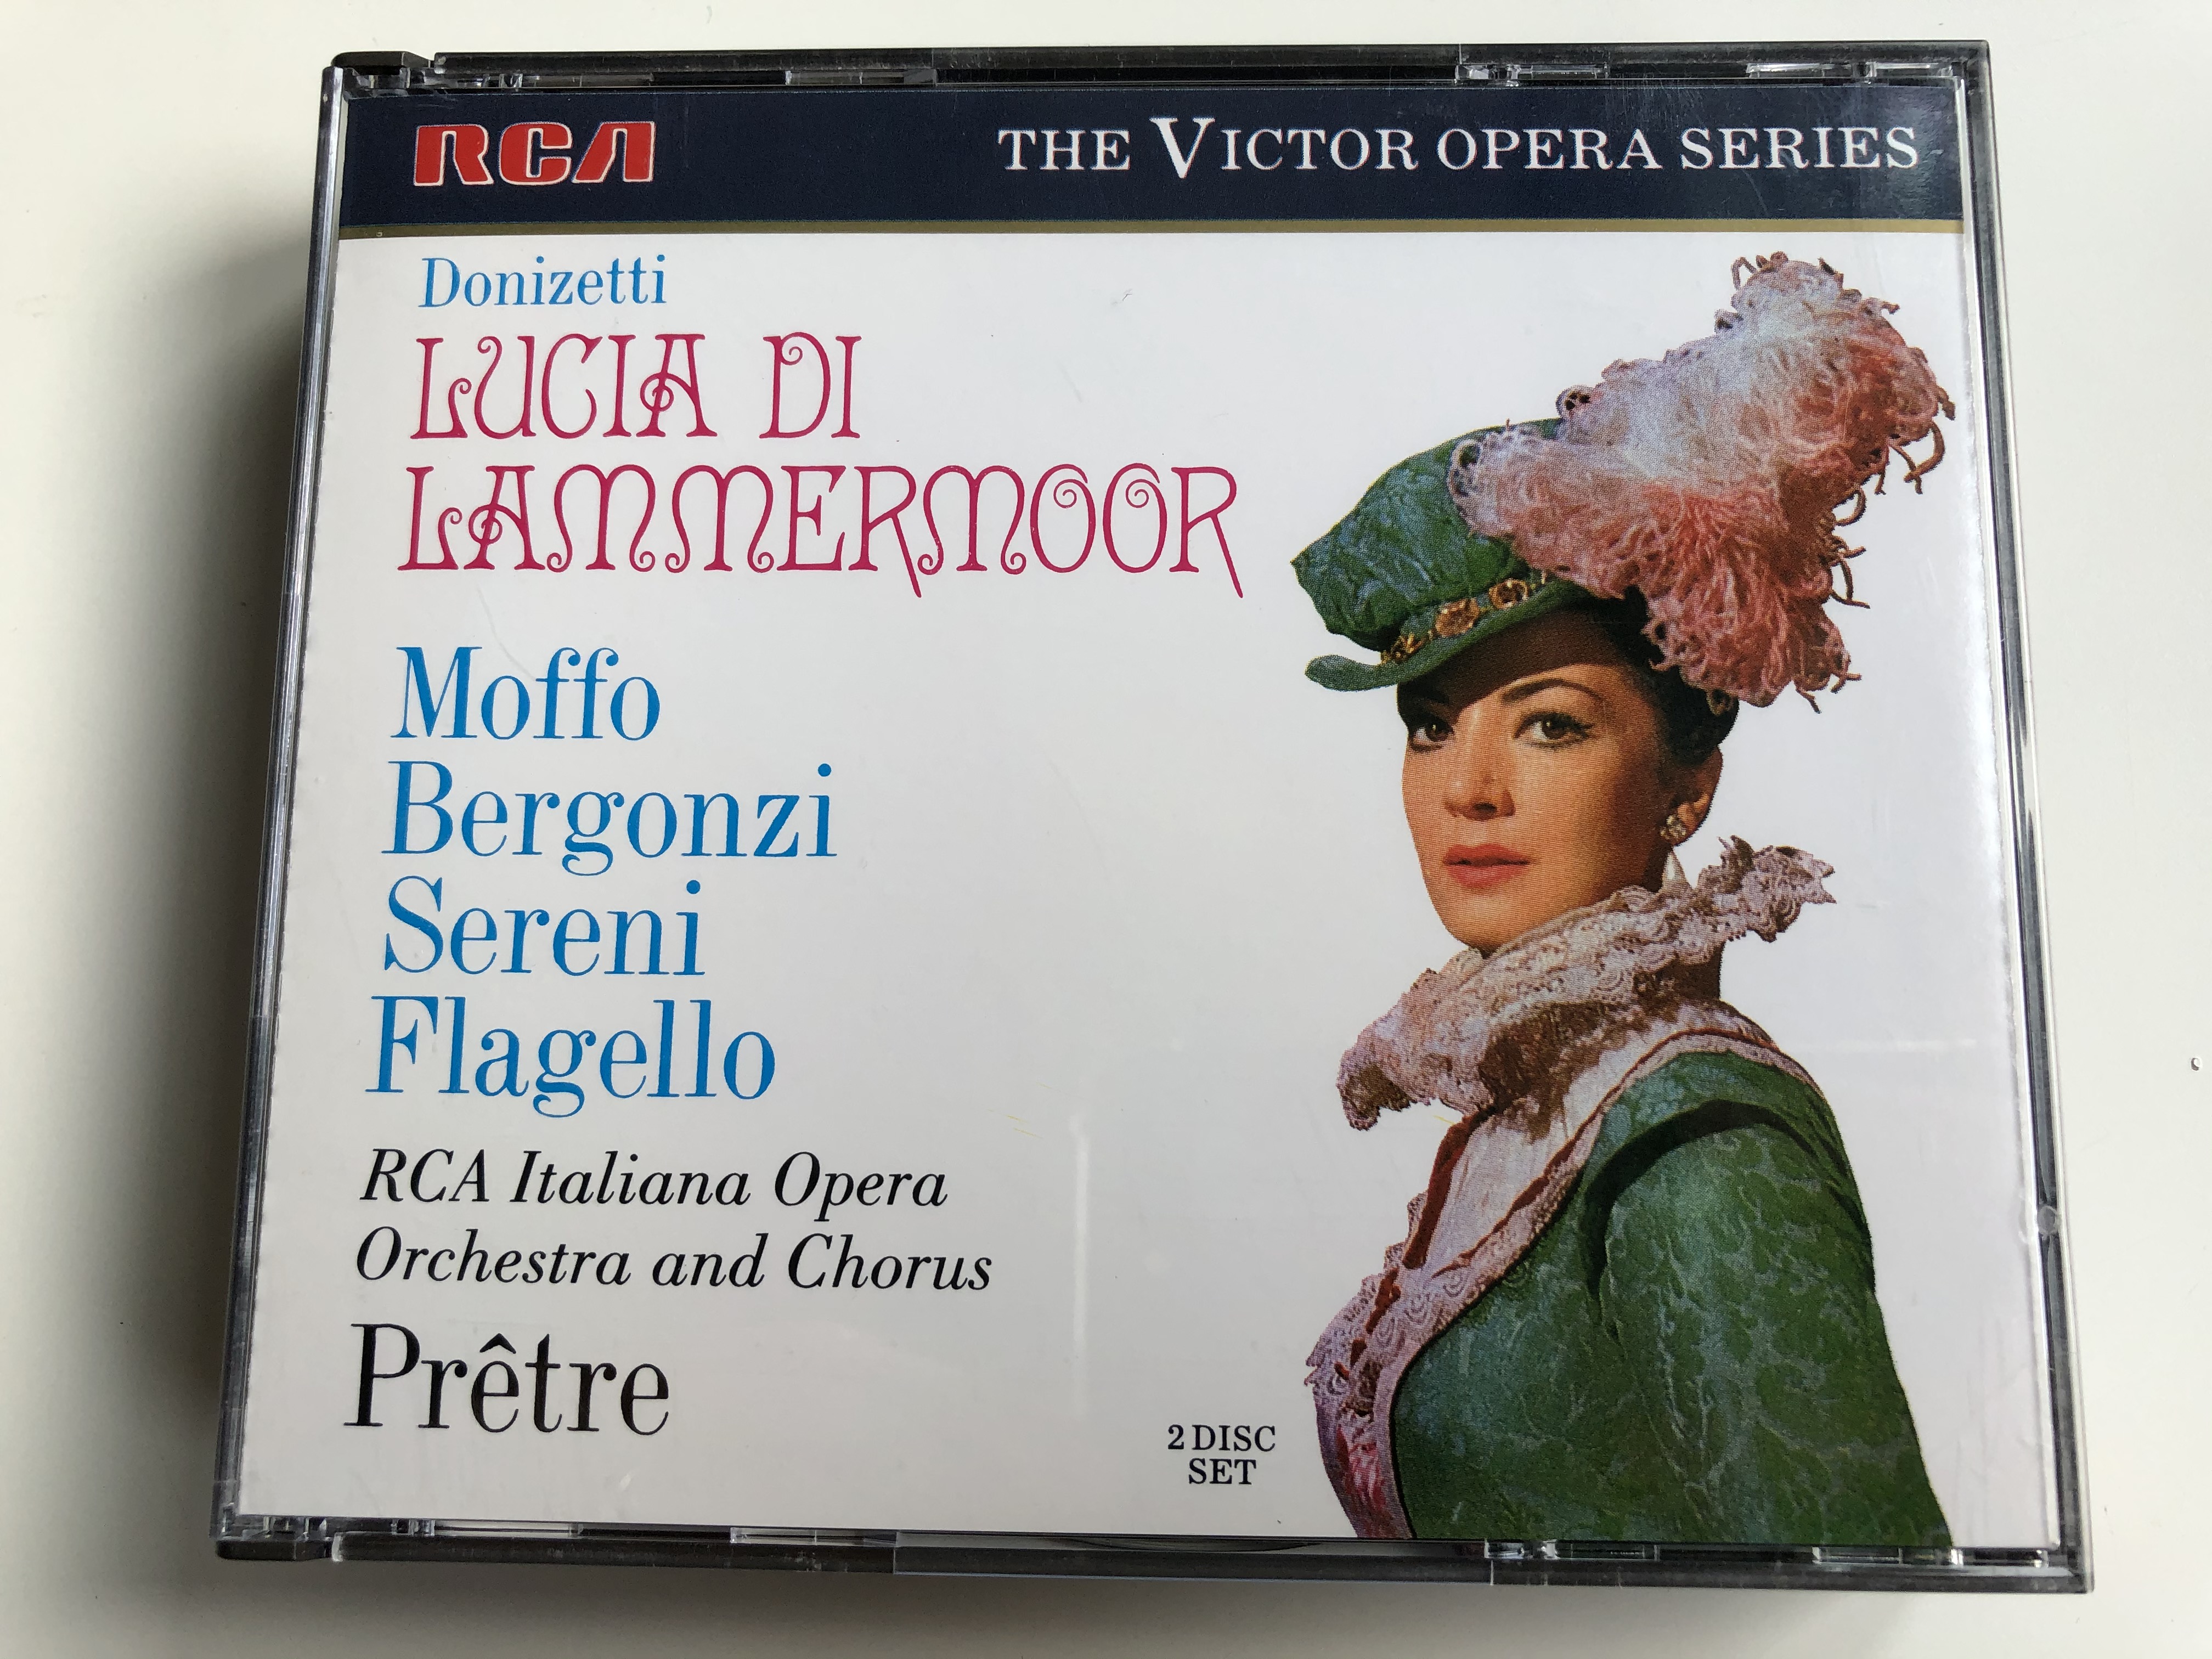 donizetti-lucia-di-lammermoor-moffo-bergonzi-sereni-flagello-rca-italiana-opera-orchestra-and-chorus-pr-tre-the-rca-victor-opera-series-rca-2x-audio-cd-gd86504-2-.jpg